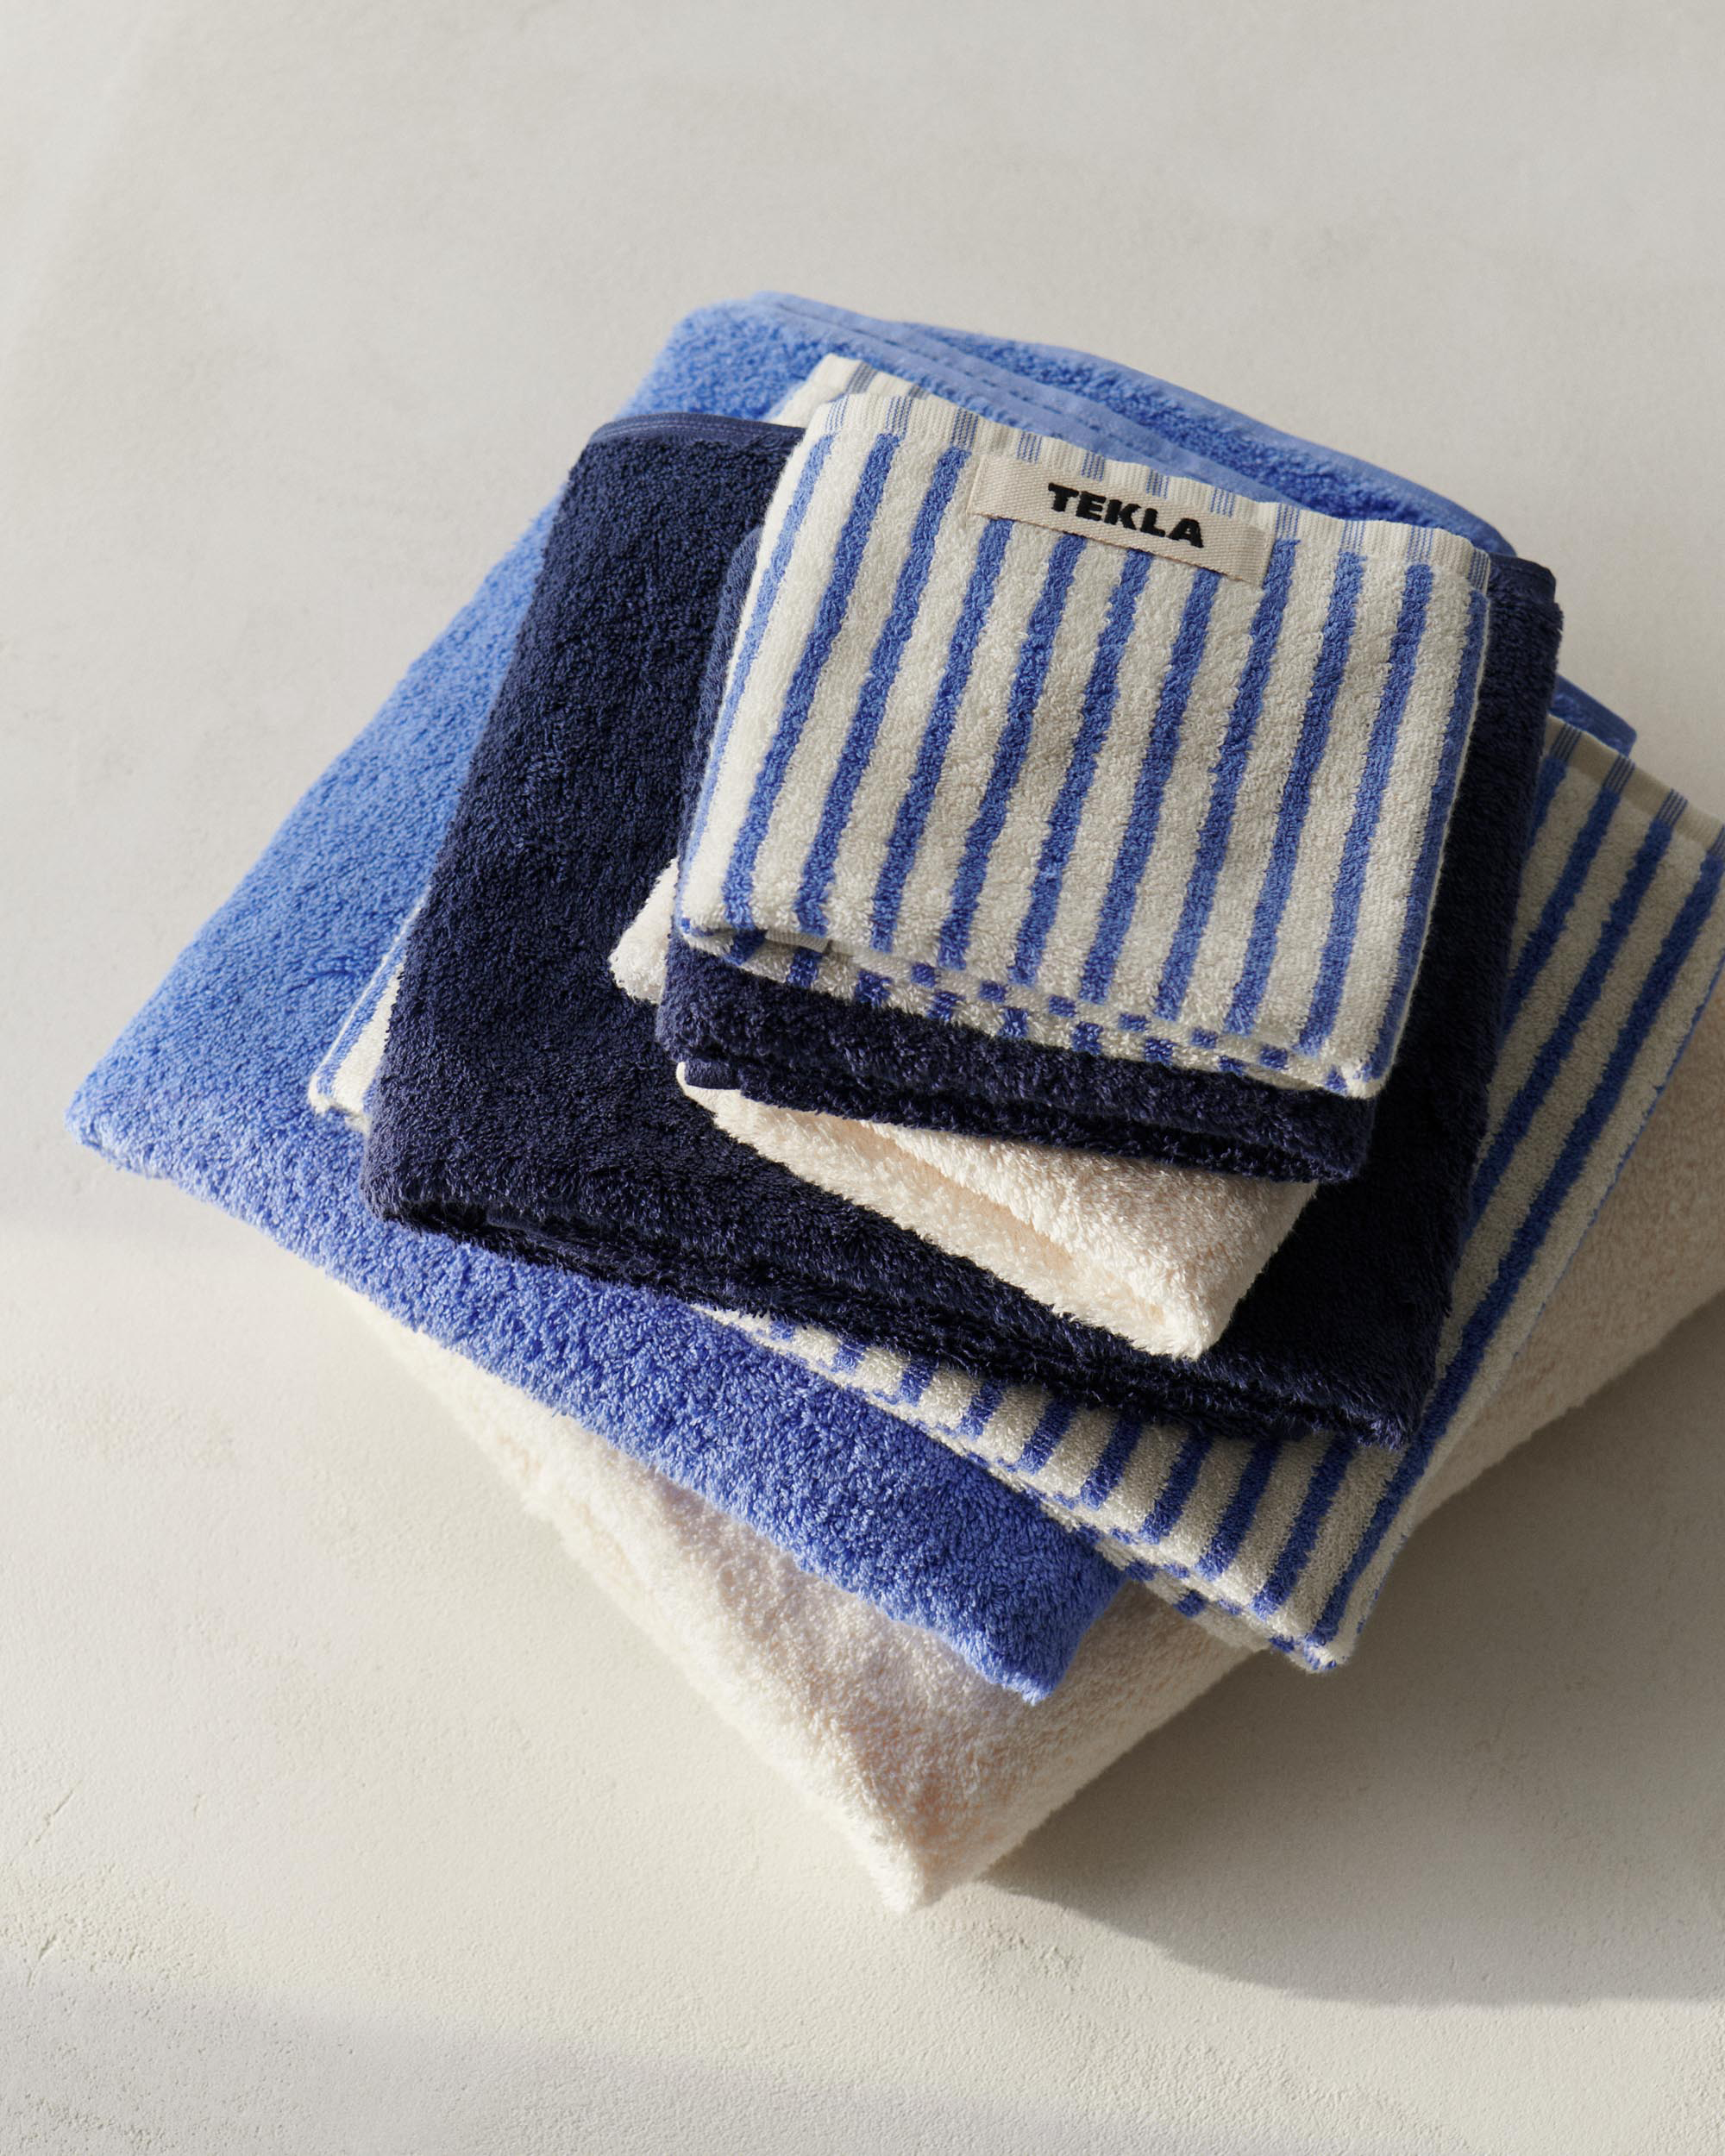 Bath Towel (Solid) - Navy